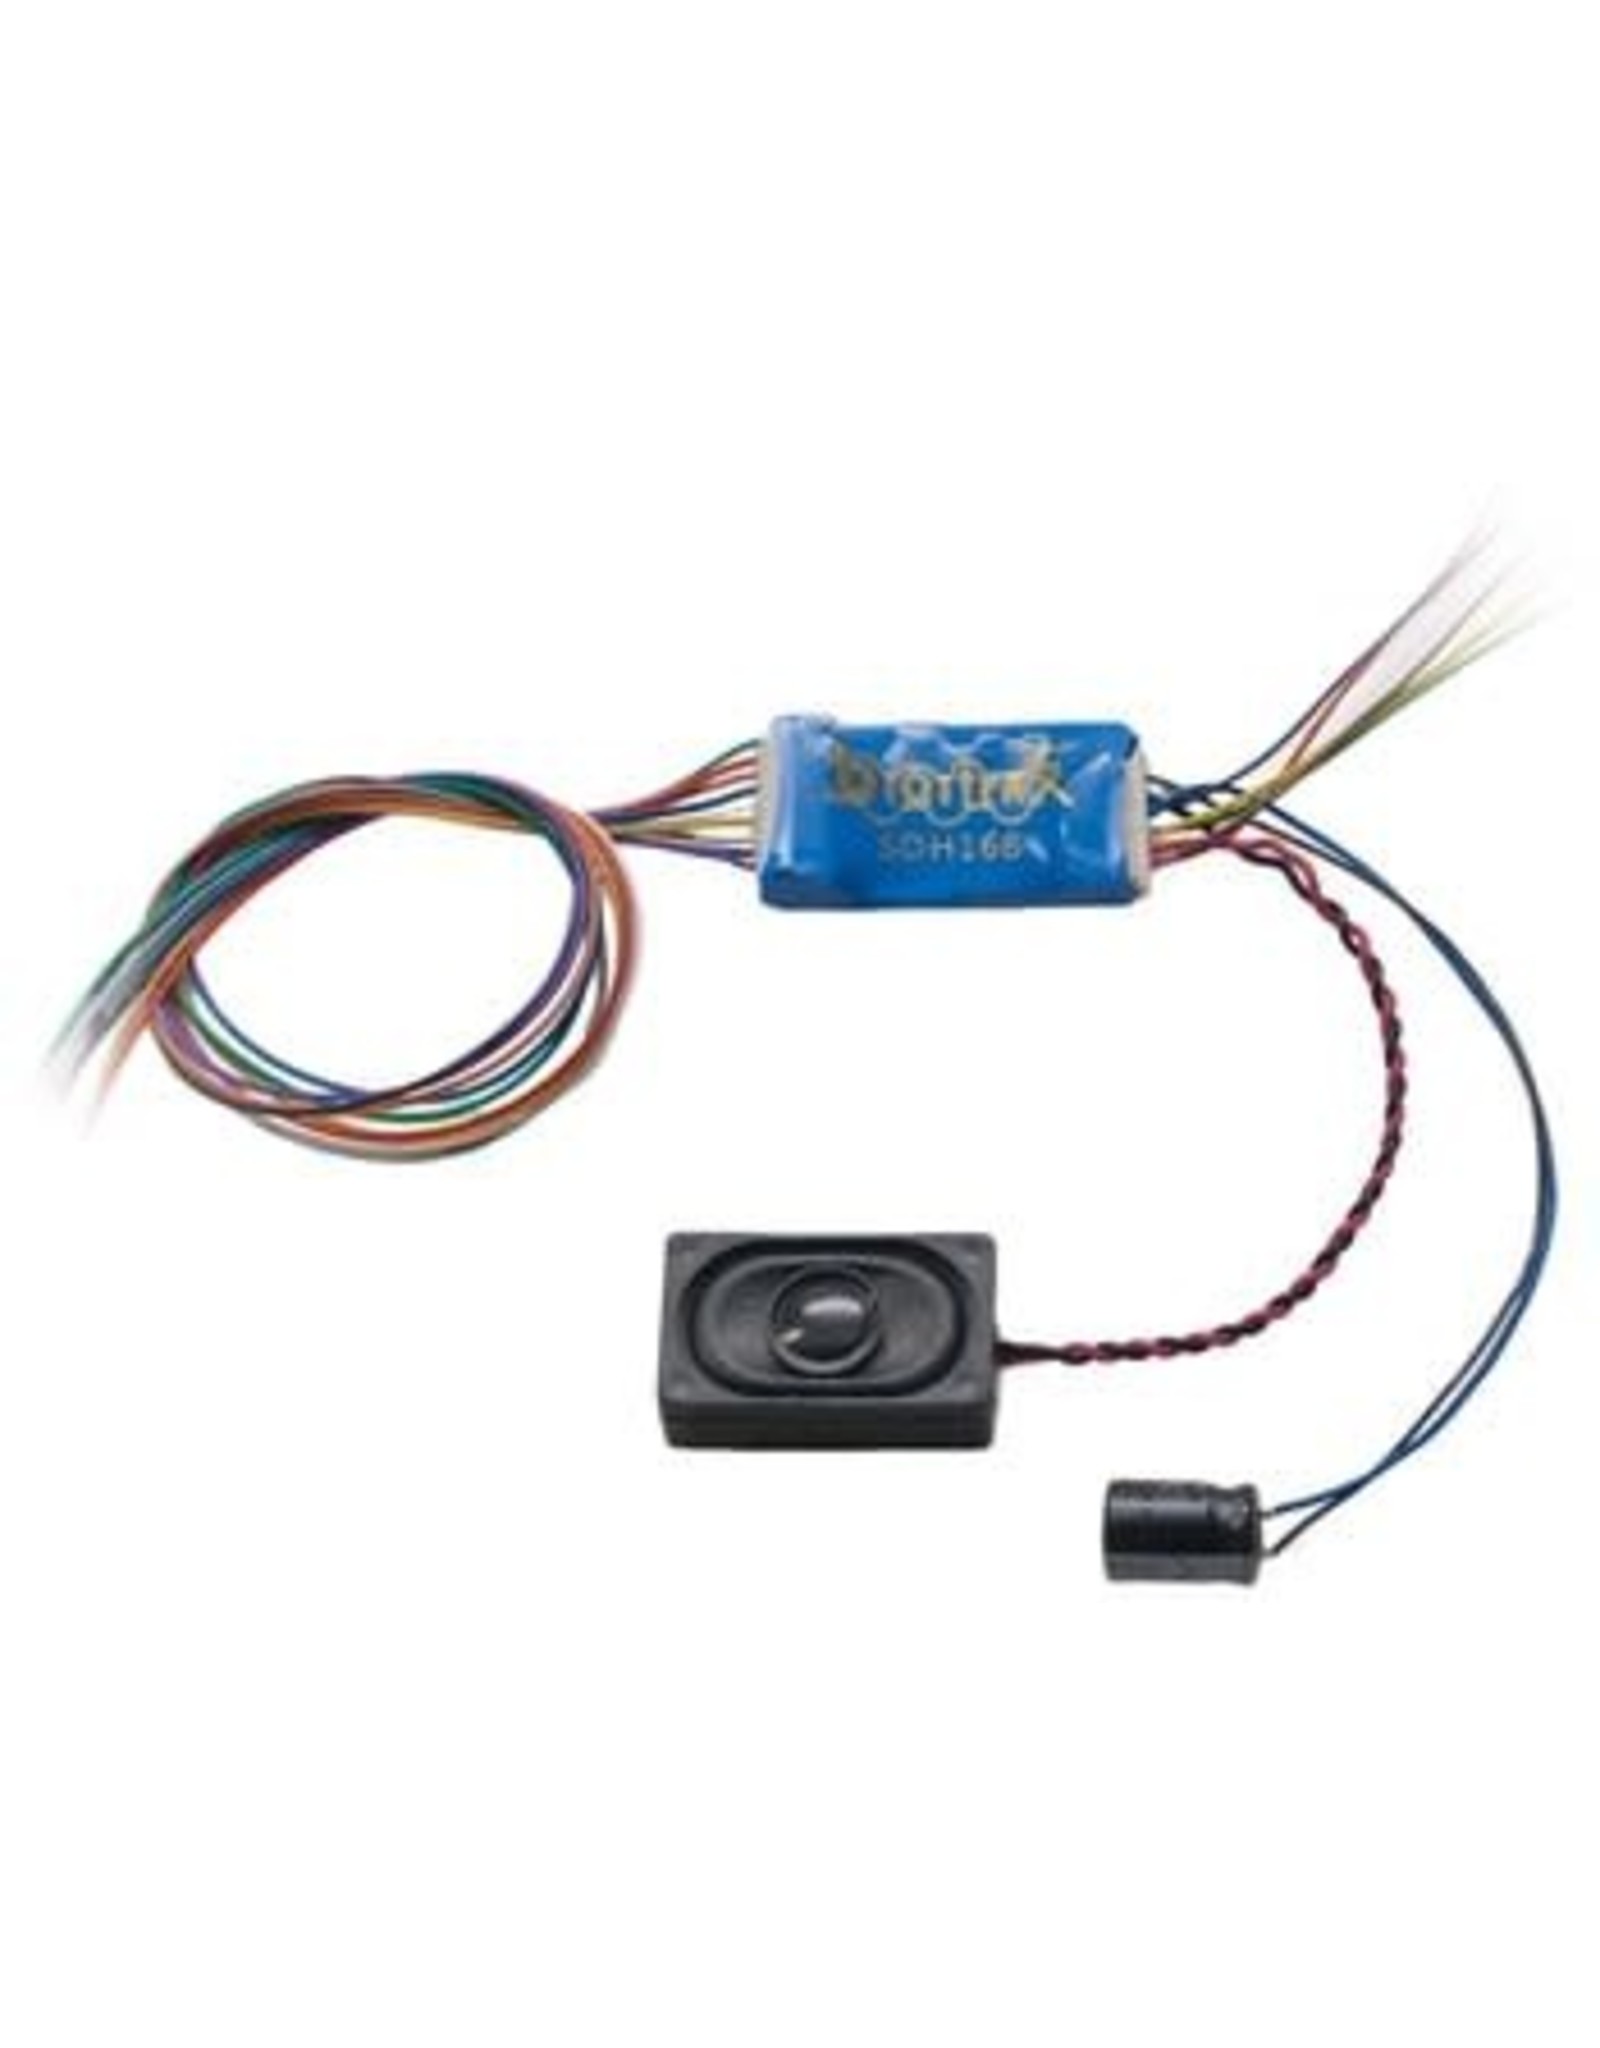 Digitrax SDH166D Series 6 Sound & Control Decoder -- 6 FX3 Functions, 8-Bit Sound, Wired